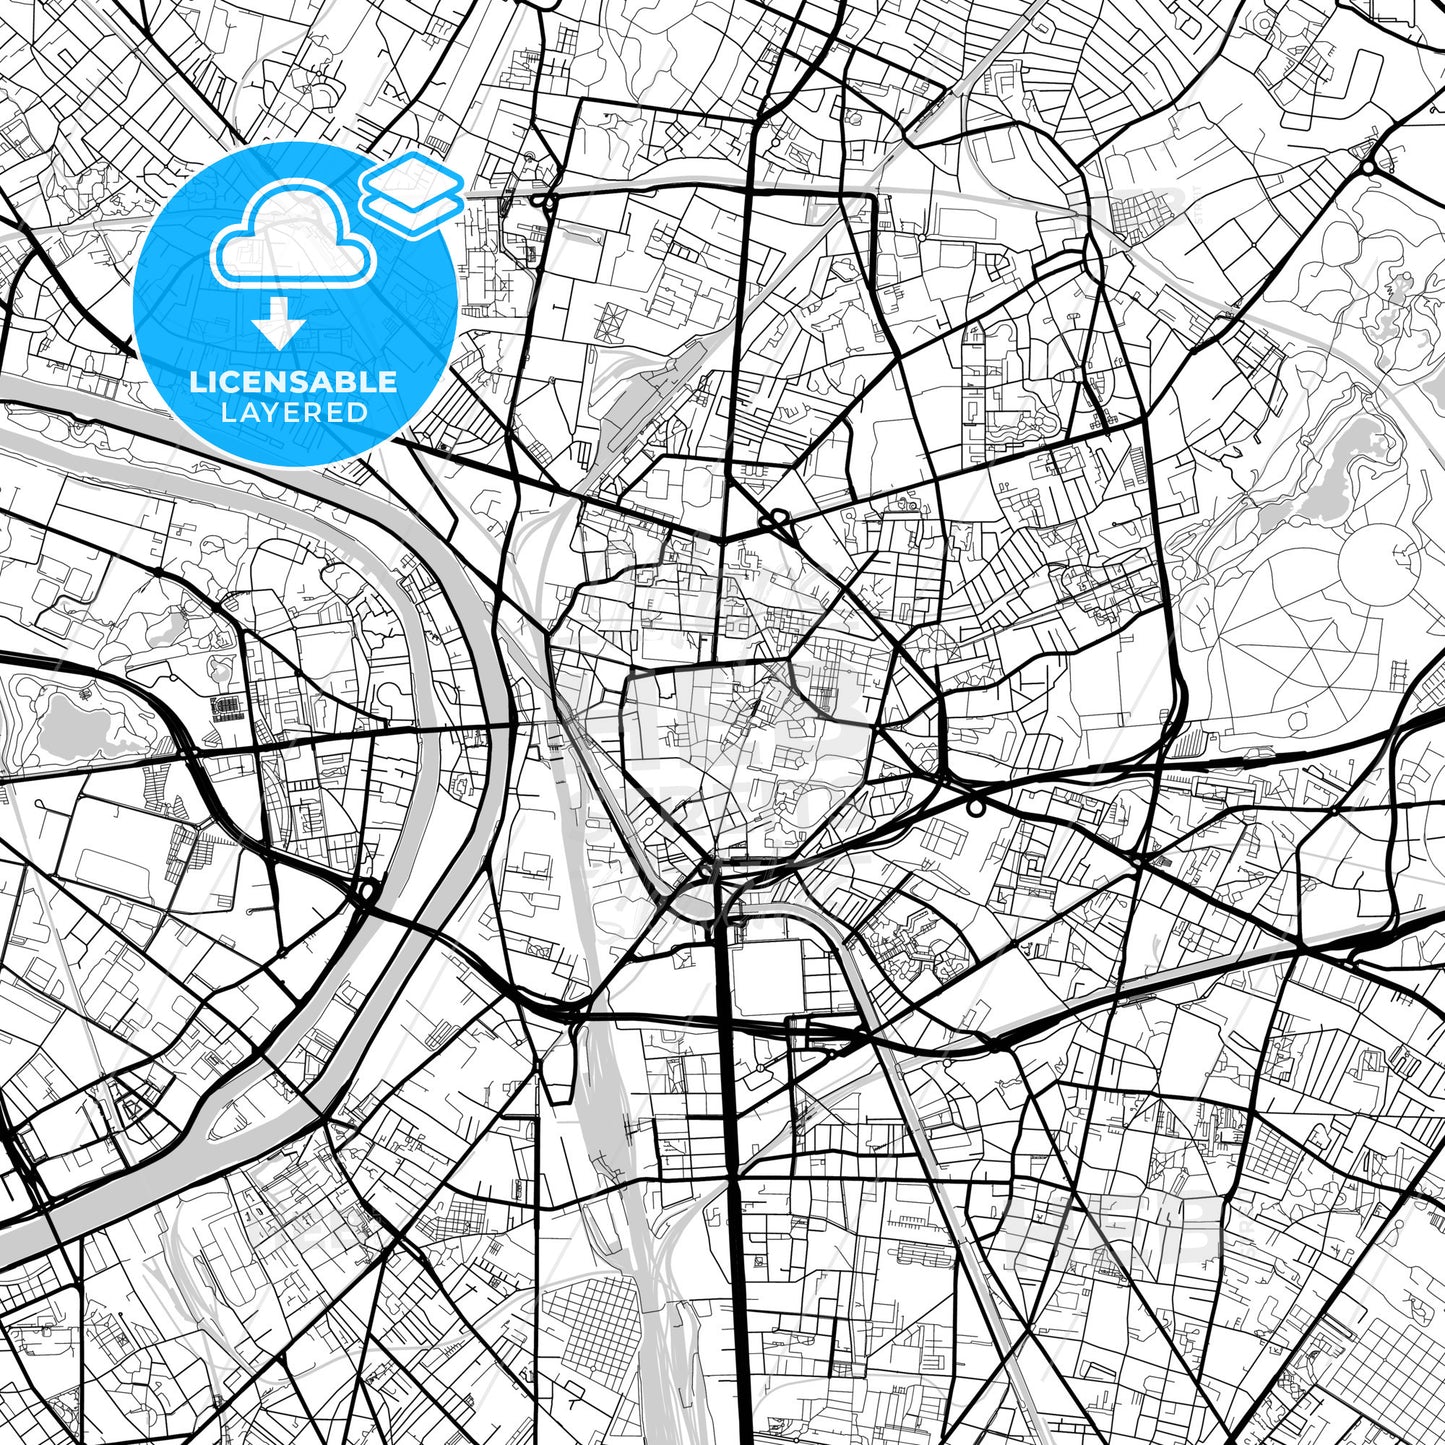 Layered PDF map of Saint-Denis, Seine-Saint-Denis, France